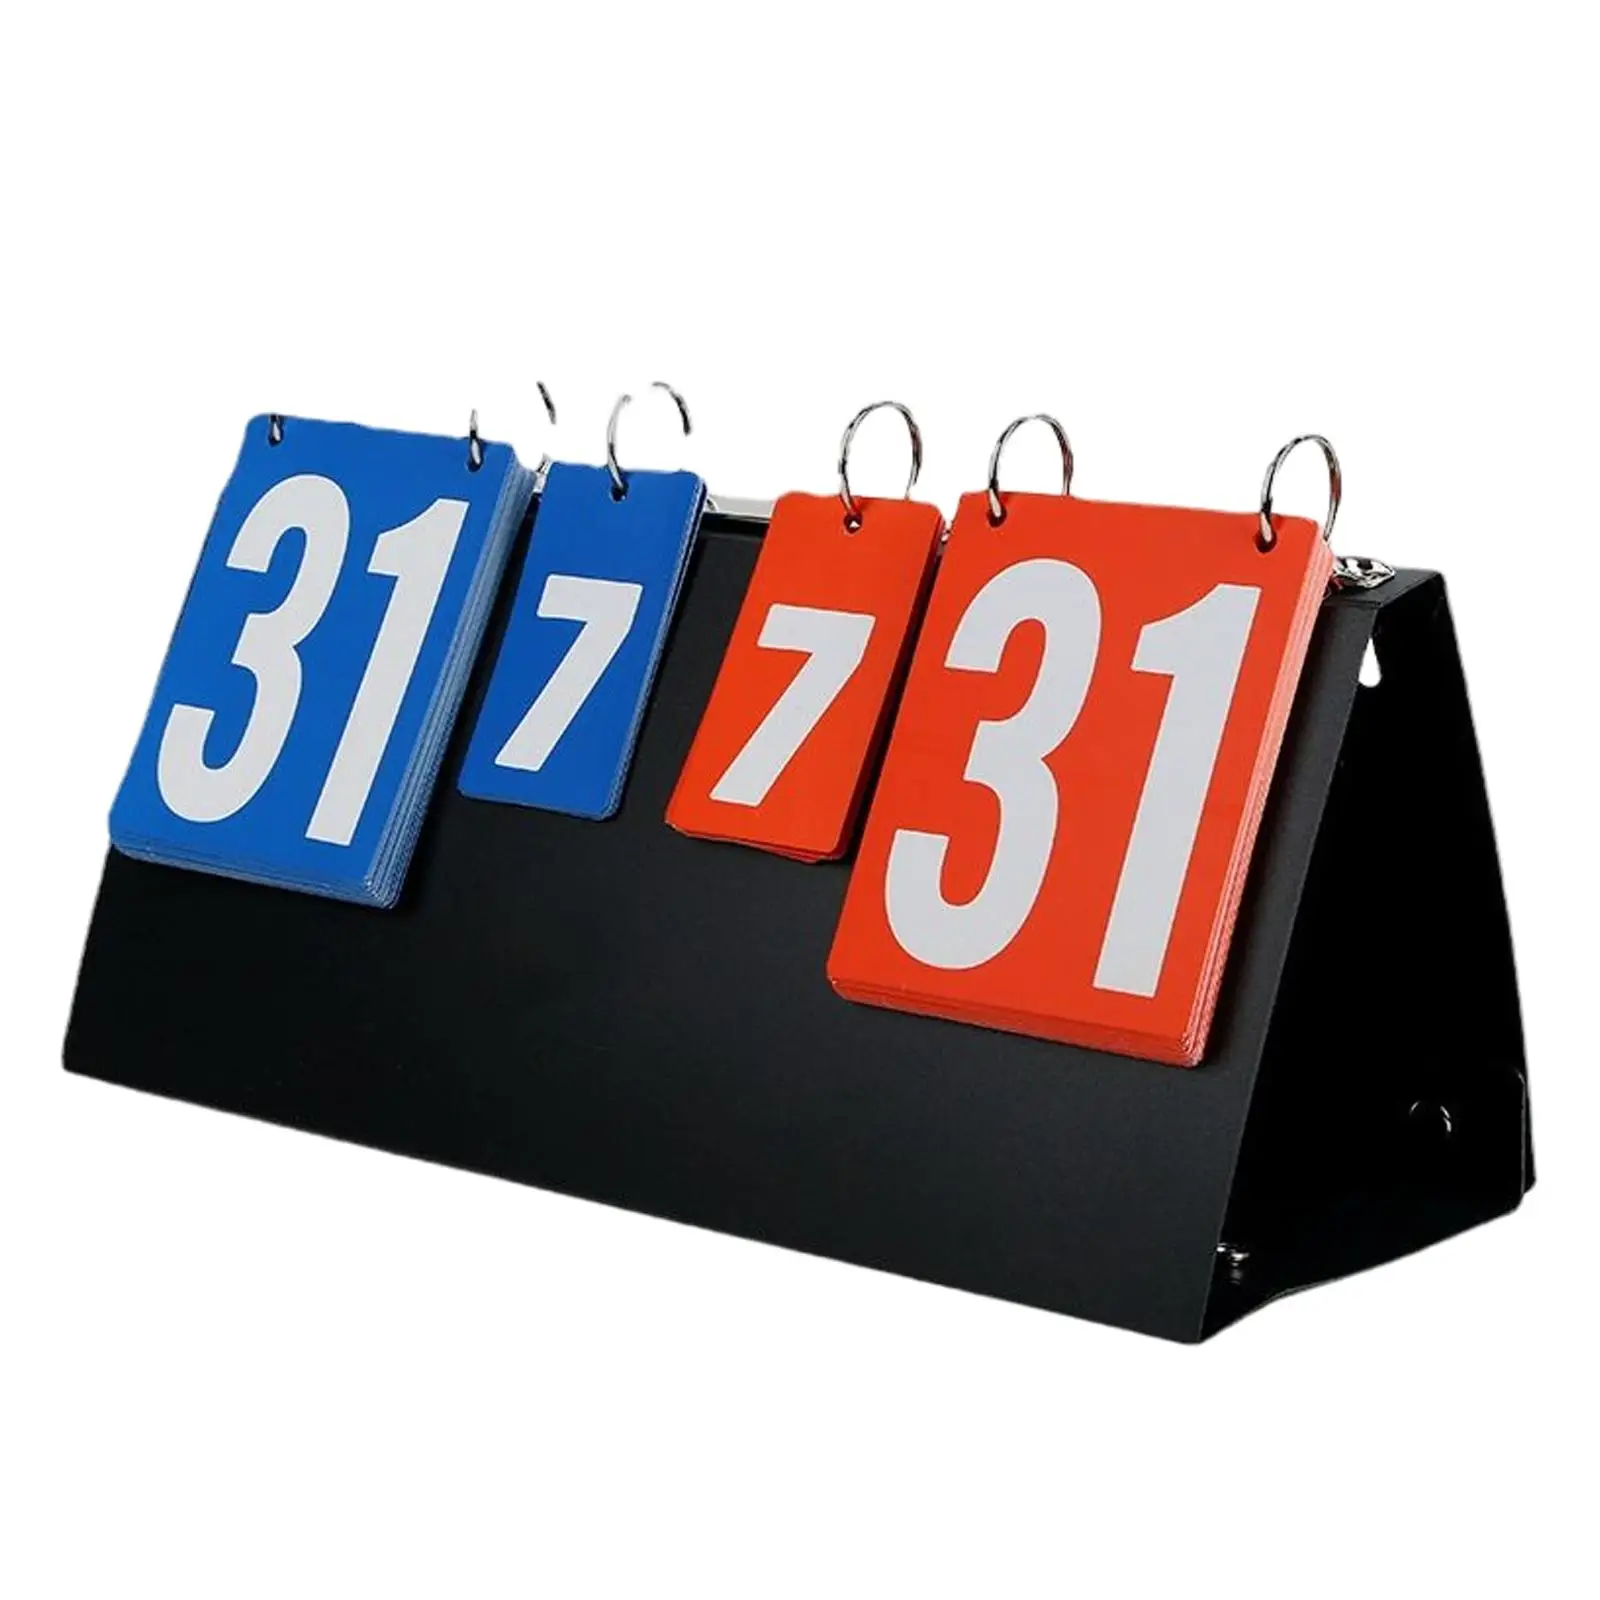 4 Digits Portable Table Top Scoreboard, Multi Sports Score Scoreboard Score Keeper